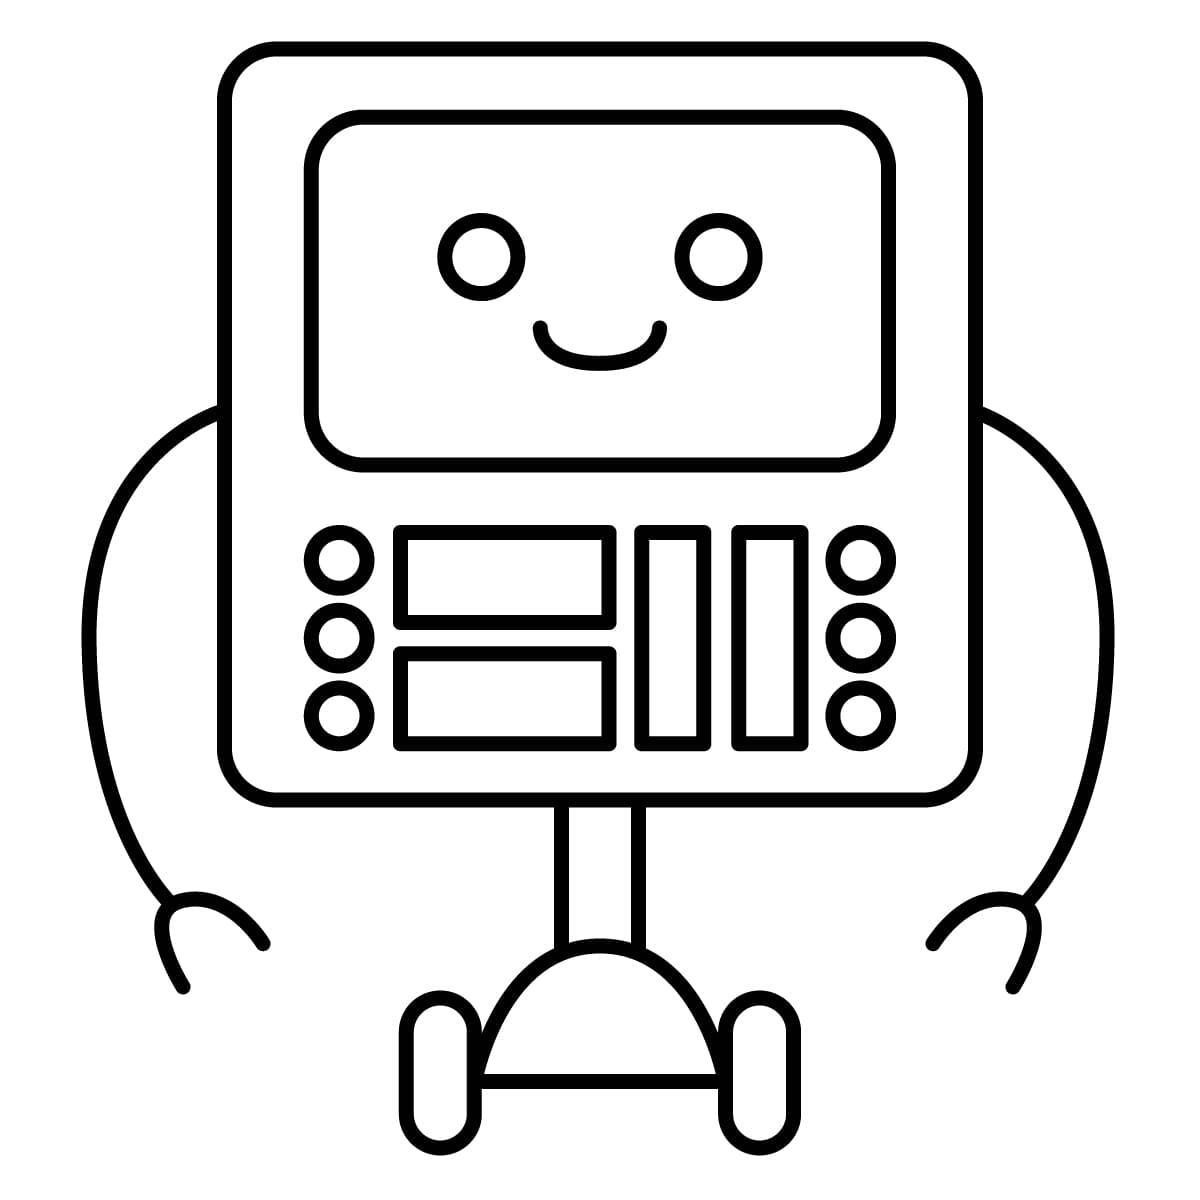 Diseñar un robot humanoide es fácil con herramientas de regla por viciaia   Tutoriales en comunidad  CLIP STUDIO TIPS